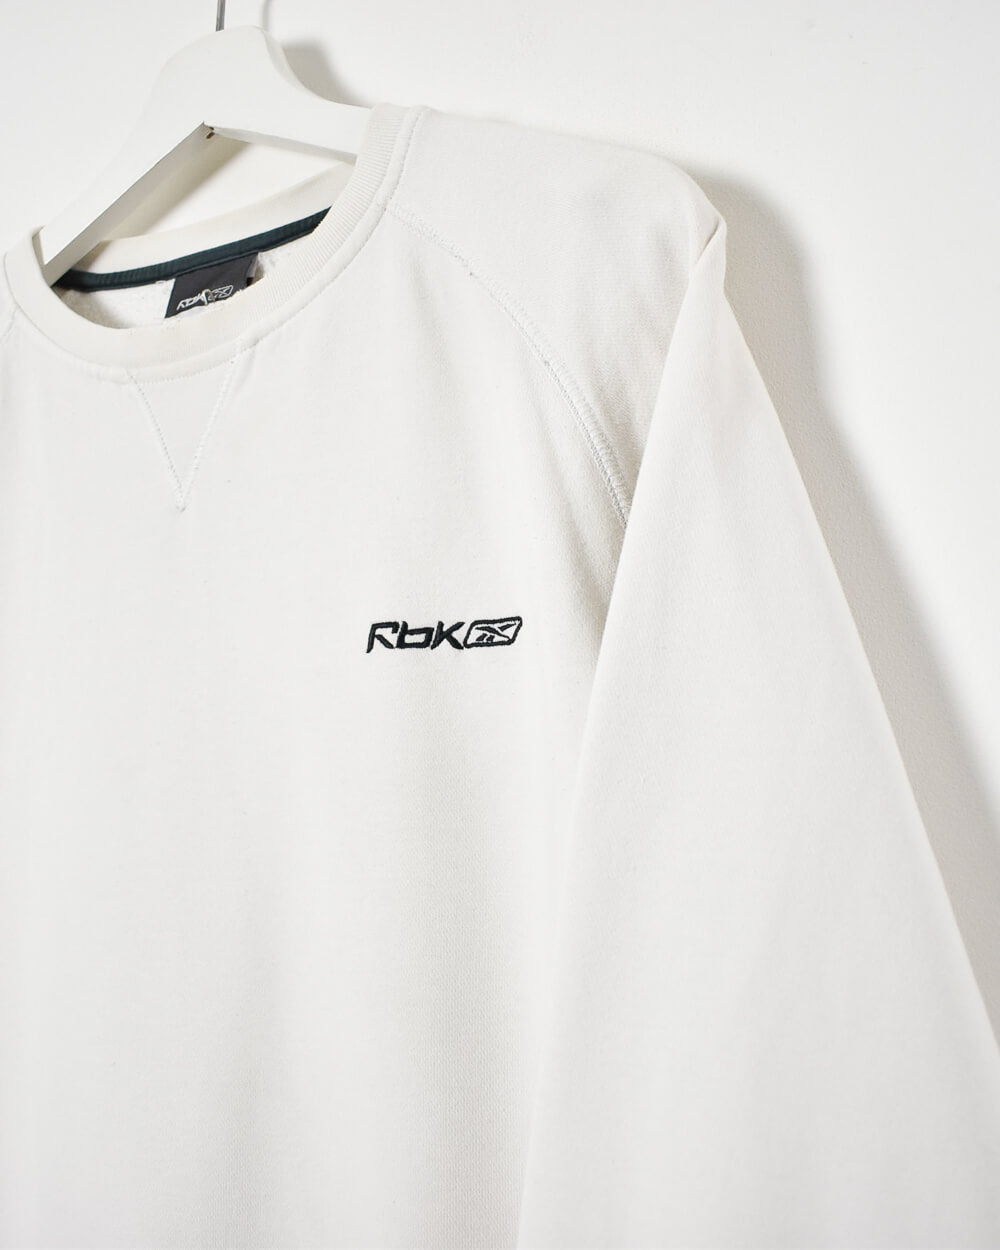 White Reebok Sweatshirt - Medium